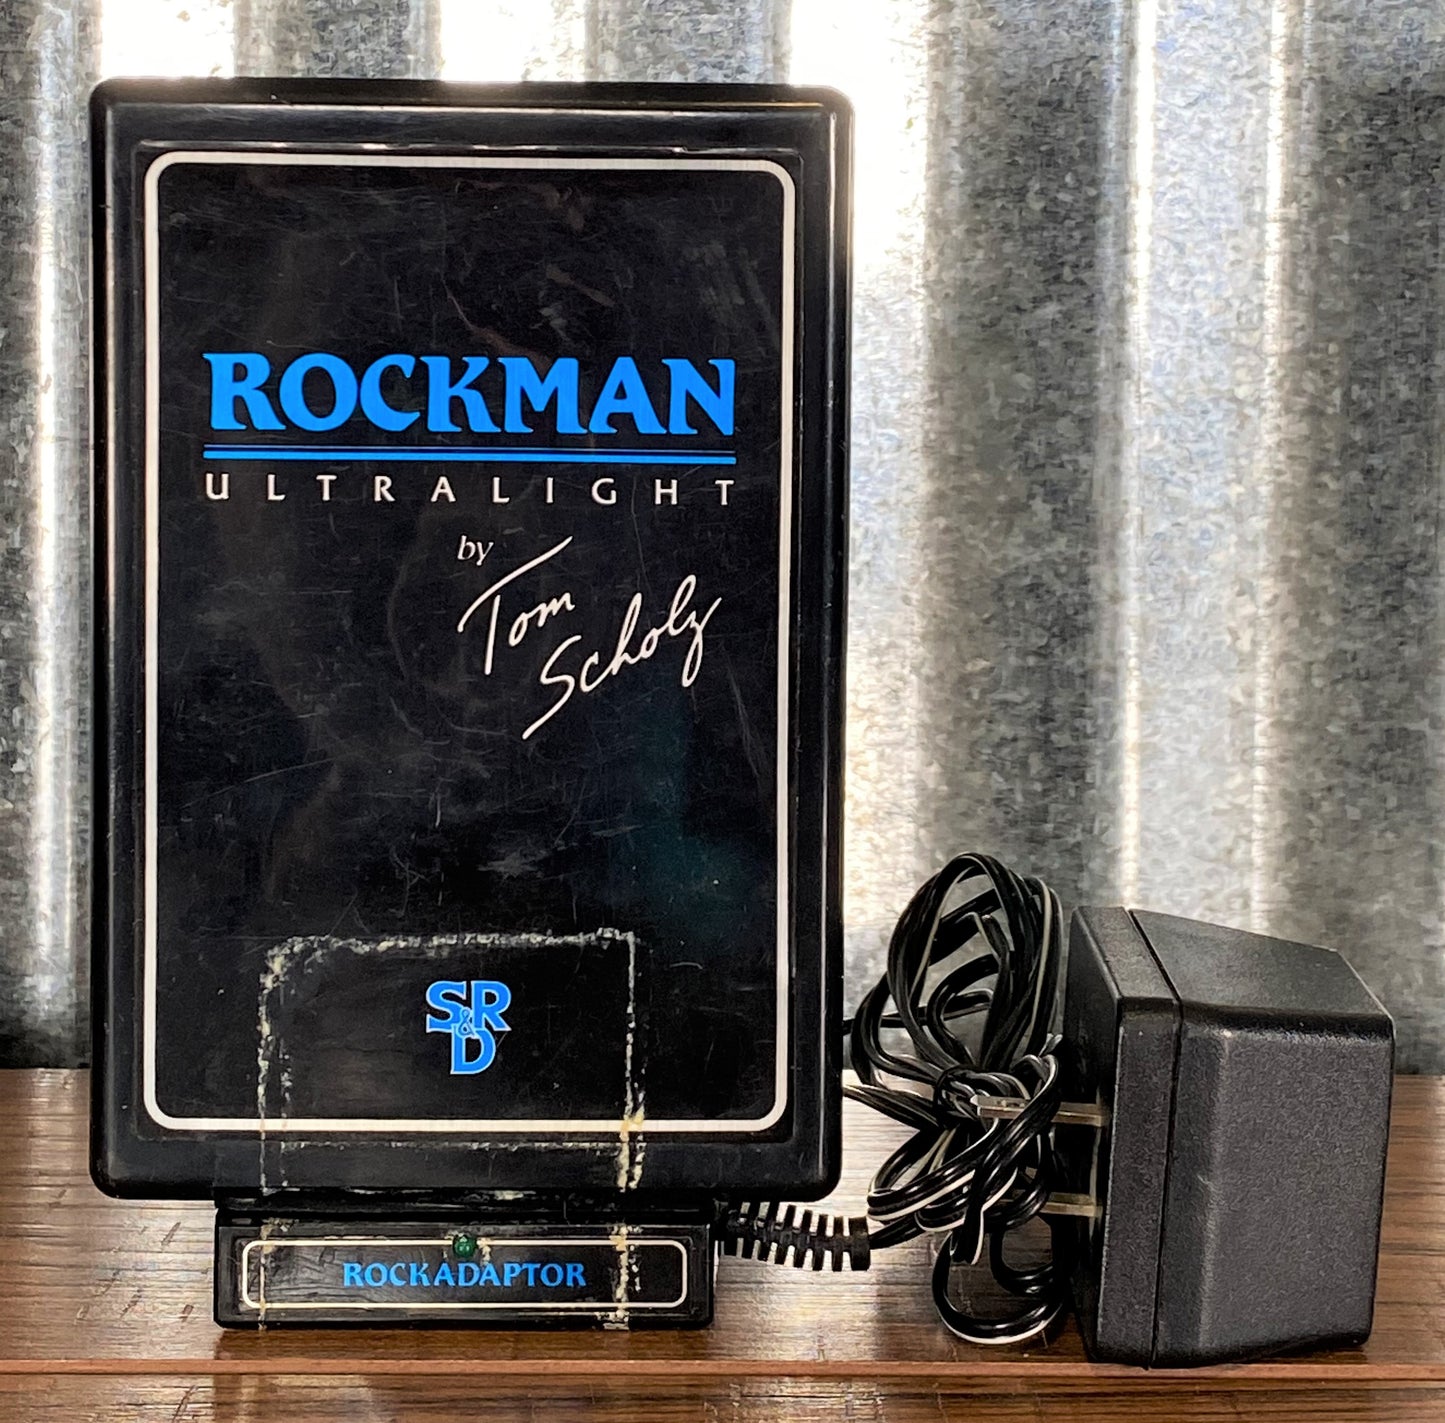 SR&D Tom Schultz Rockman Ultralight Model II Guitar Headphone Amplifier Used